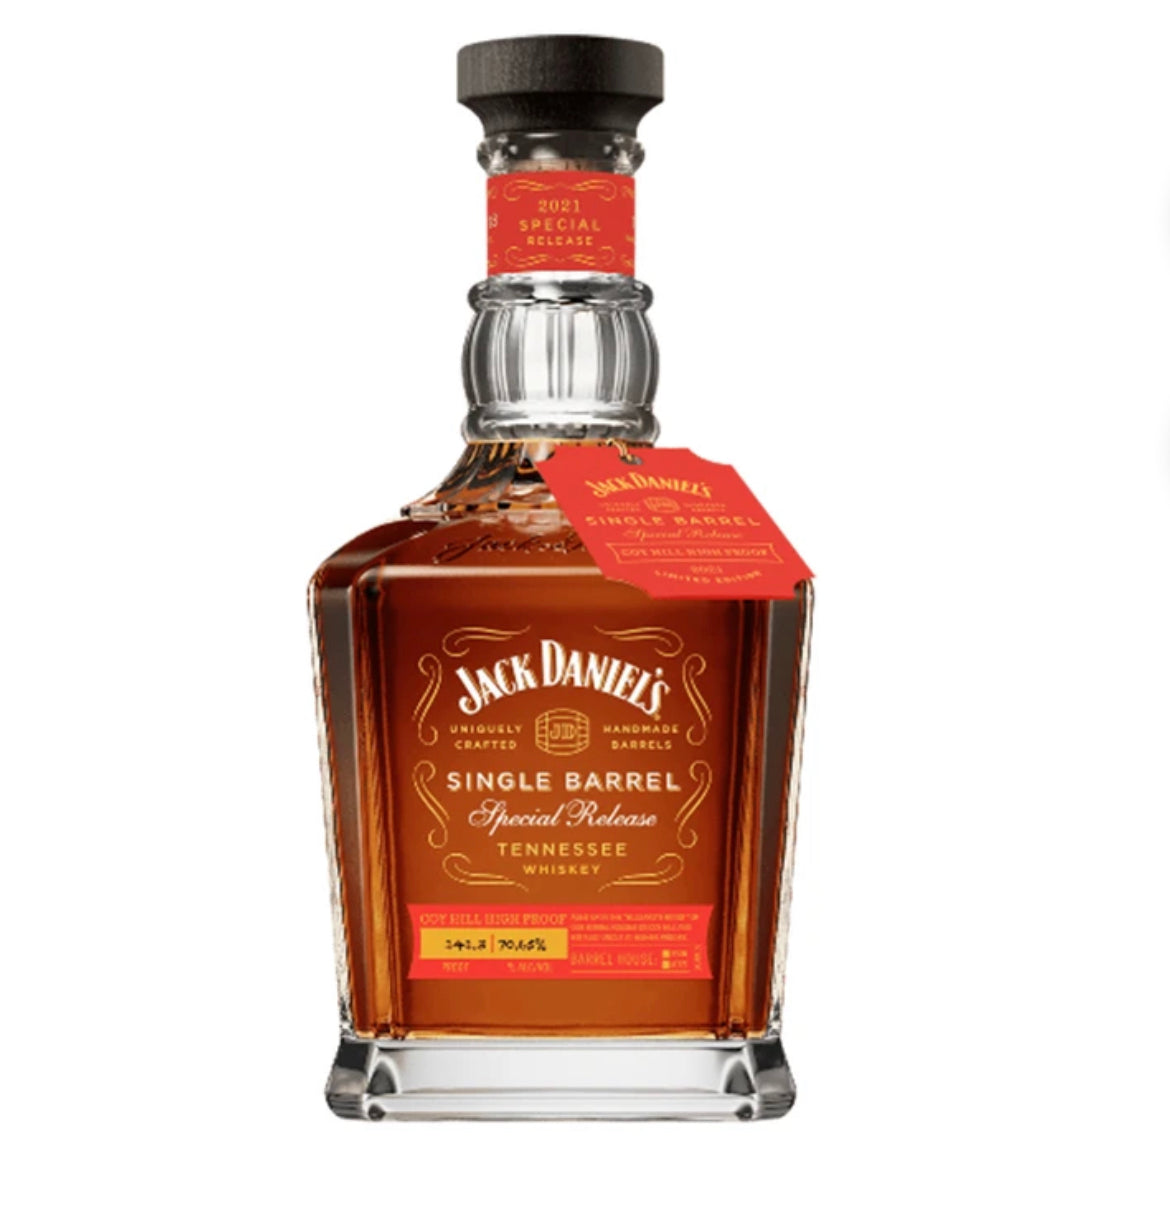 Jack Daniels 3 litre Upright Bottle - Buy Online at